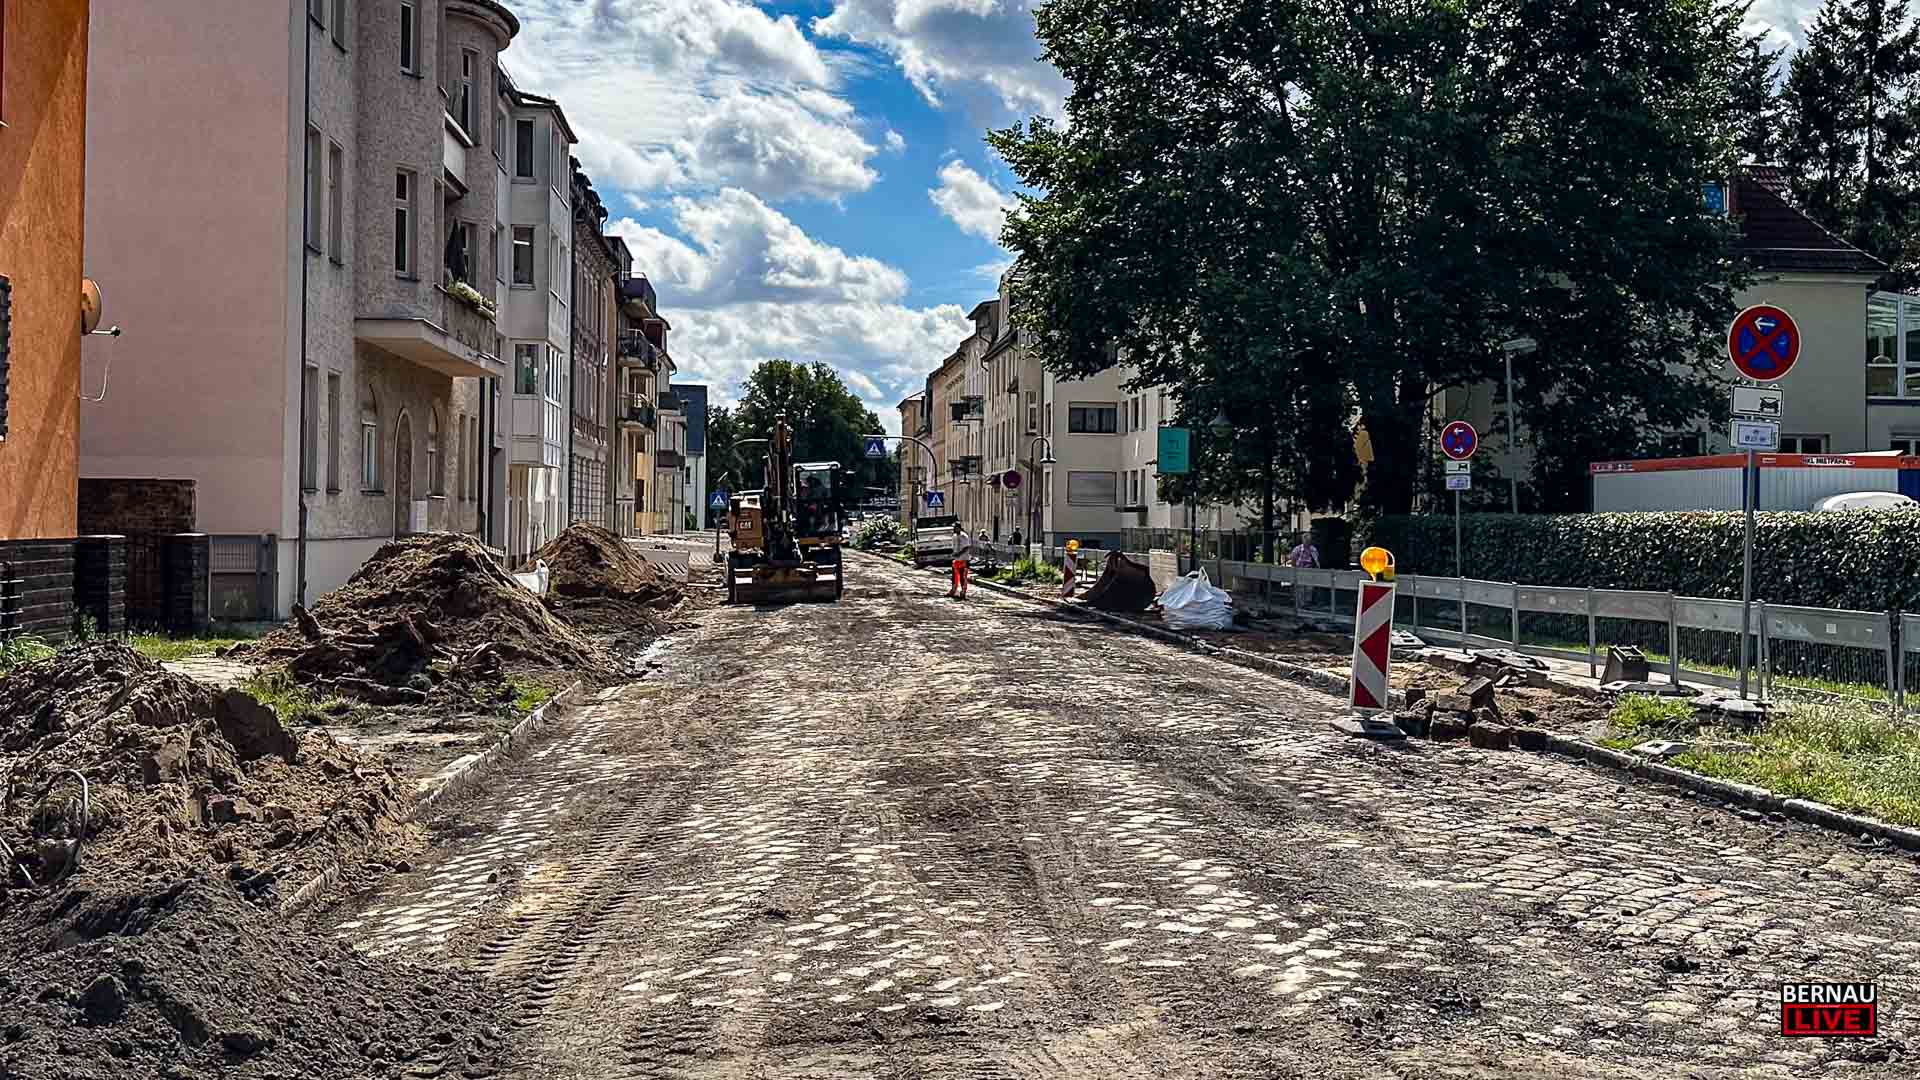 Bernau: Kopfsteinpflaster in der August-Bebel-Straße - ein wenig Nostalgie